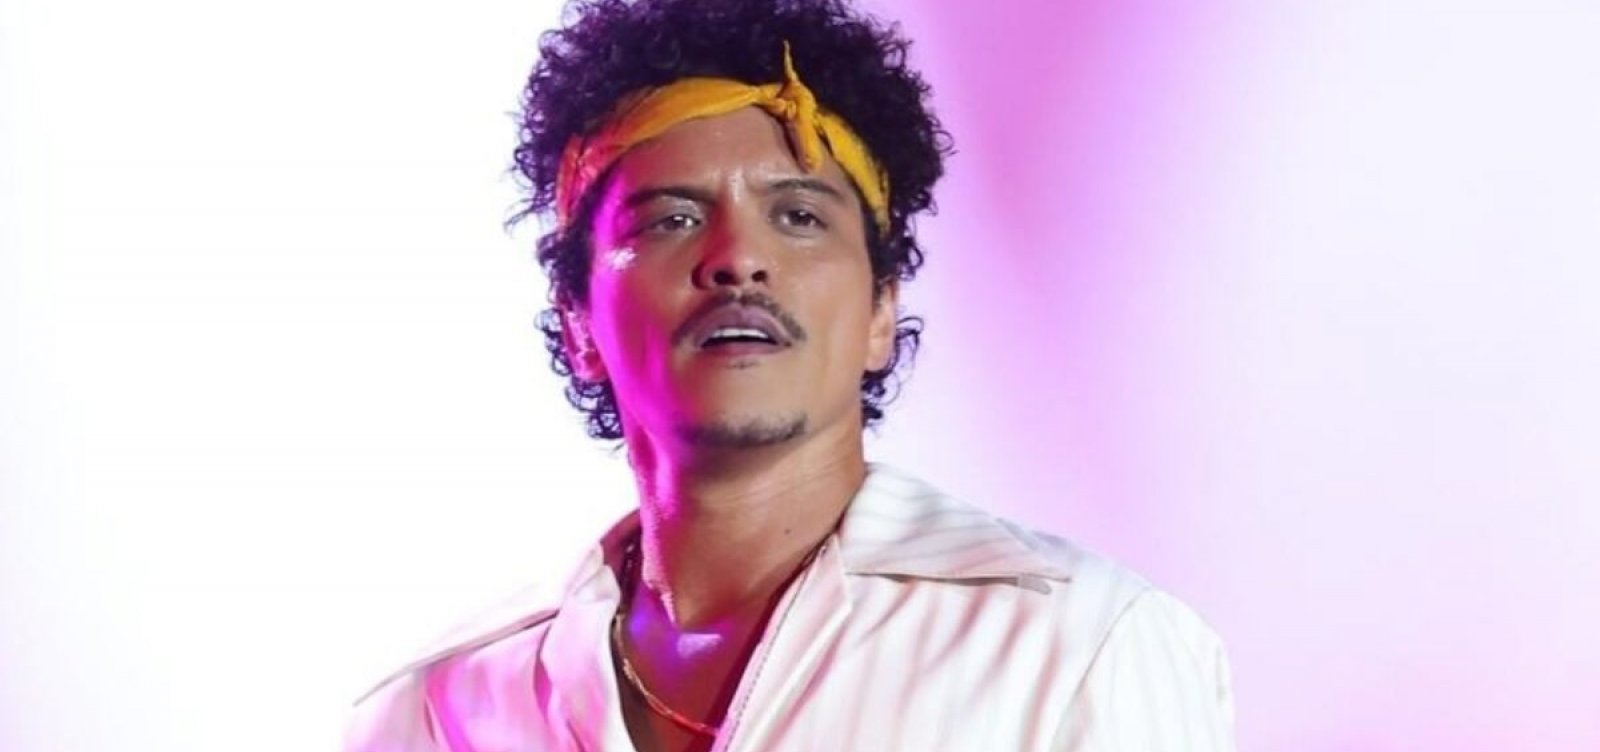 Música "Evidências" no show de Bruno Mars deve render R$ 2,2 mil aos compositores